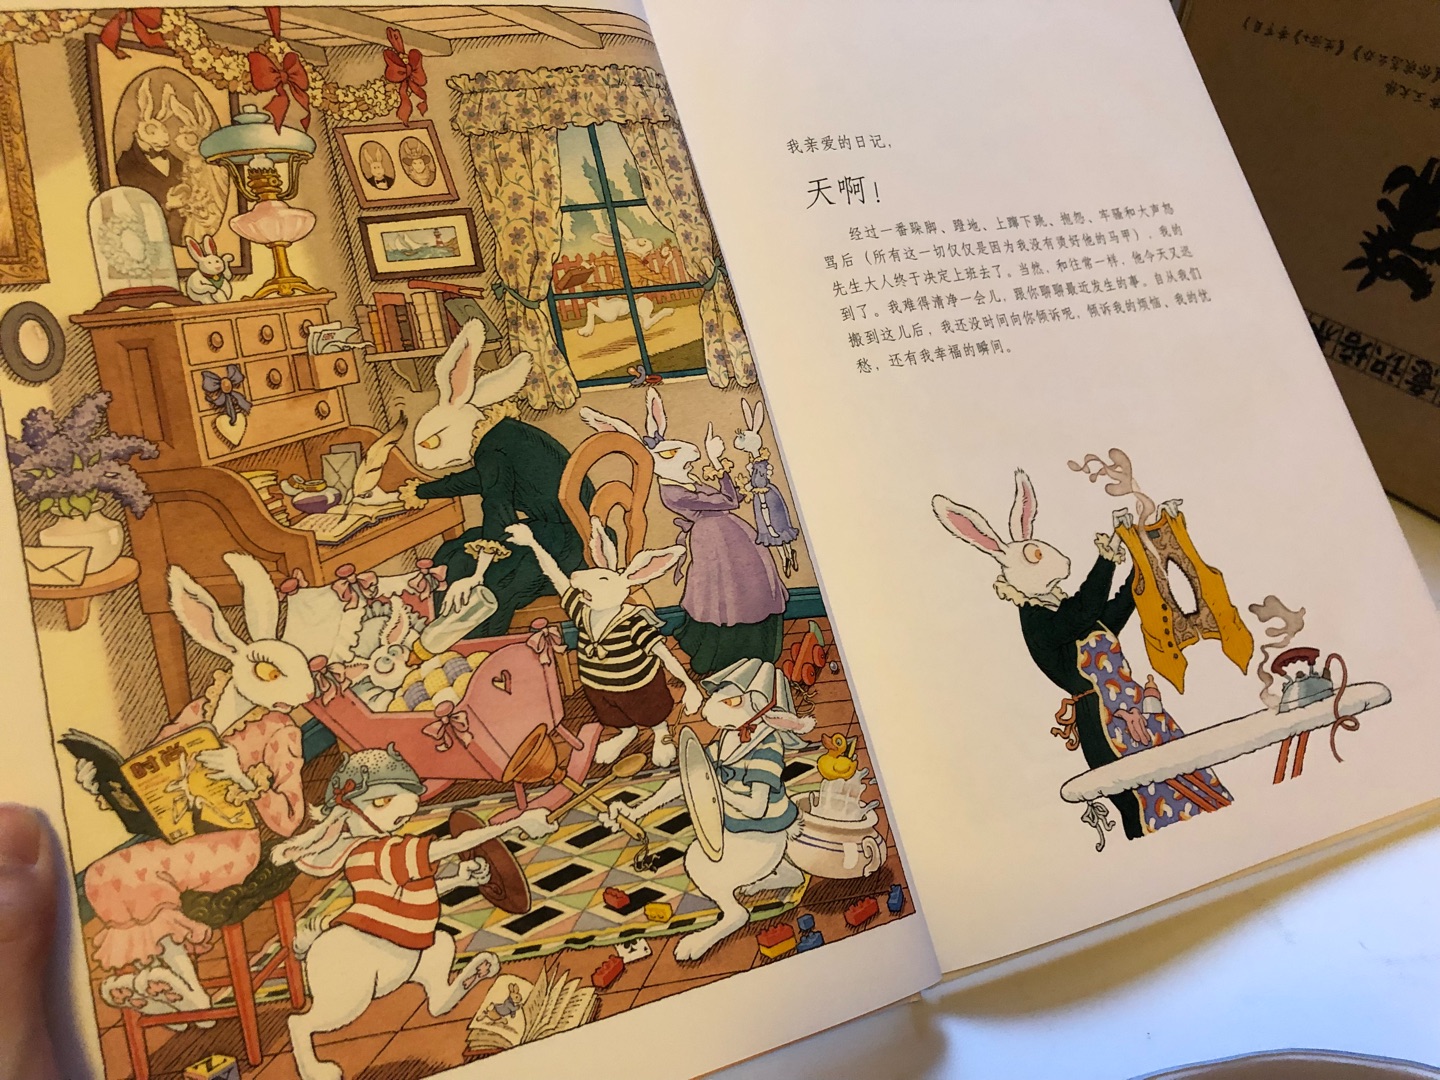 很大一本书，书架都放不下，只能横过来放，这本书感觉就是爱丽丝梦游仙境的白兔的番外篇，跟随着白兔夫人的日记，了解到白兔先生的家庭生活，内容很有趣。